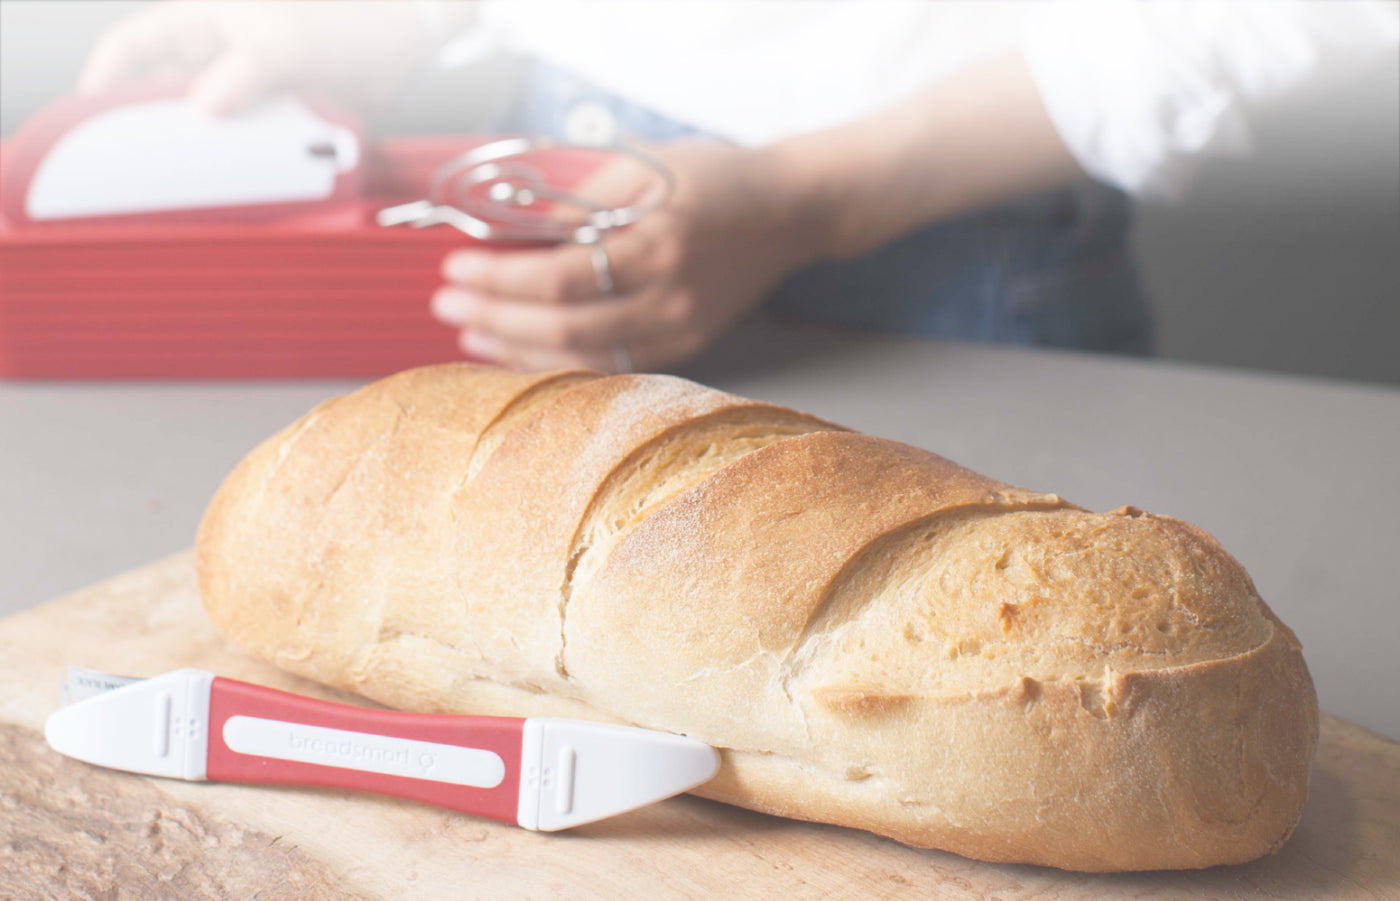 Breadsmart Artisan Bread Making Kit - 5 PC Baking Supplies Set